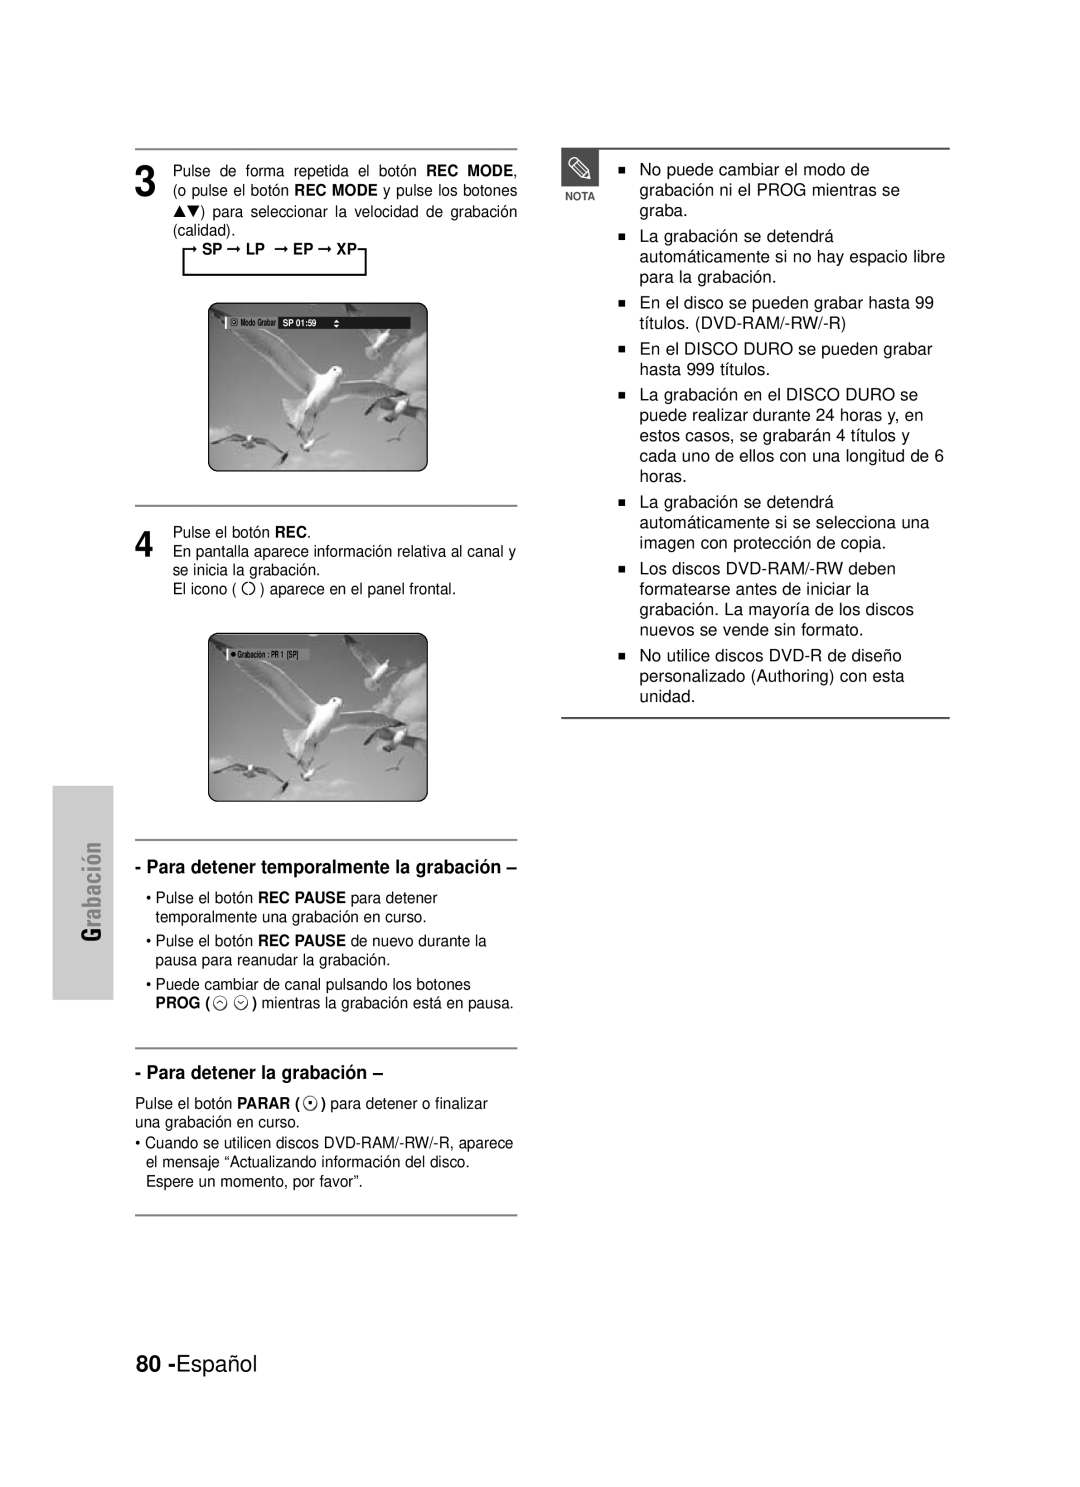 Samsung DVD-HR725/XEN manual Español, Grabación, Para detener temporalmente la grabación, Para detener la grabación 